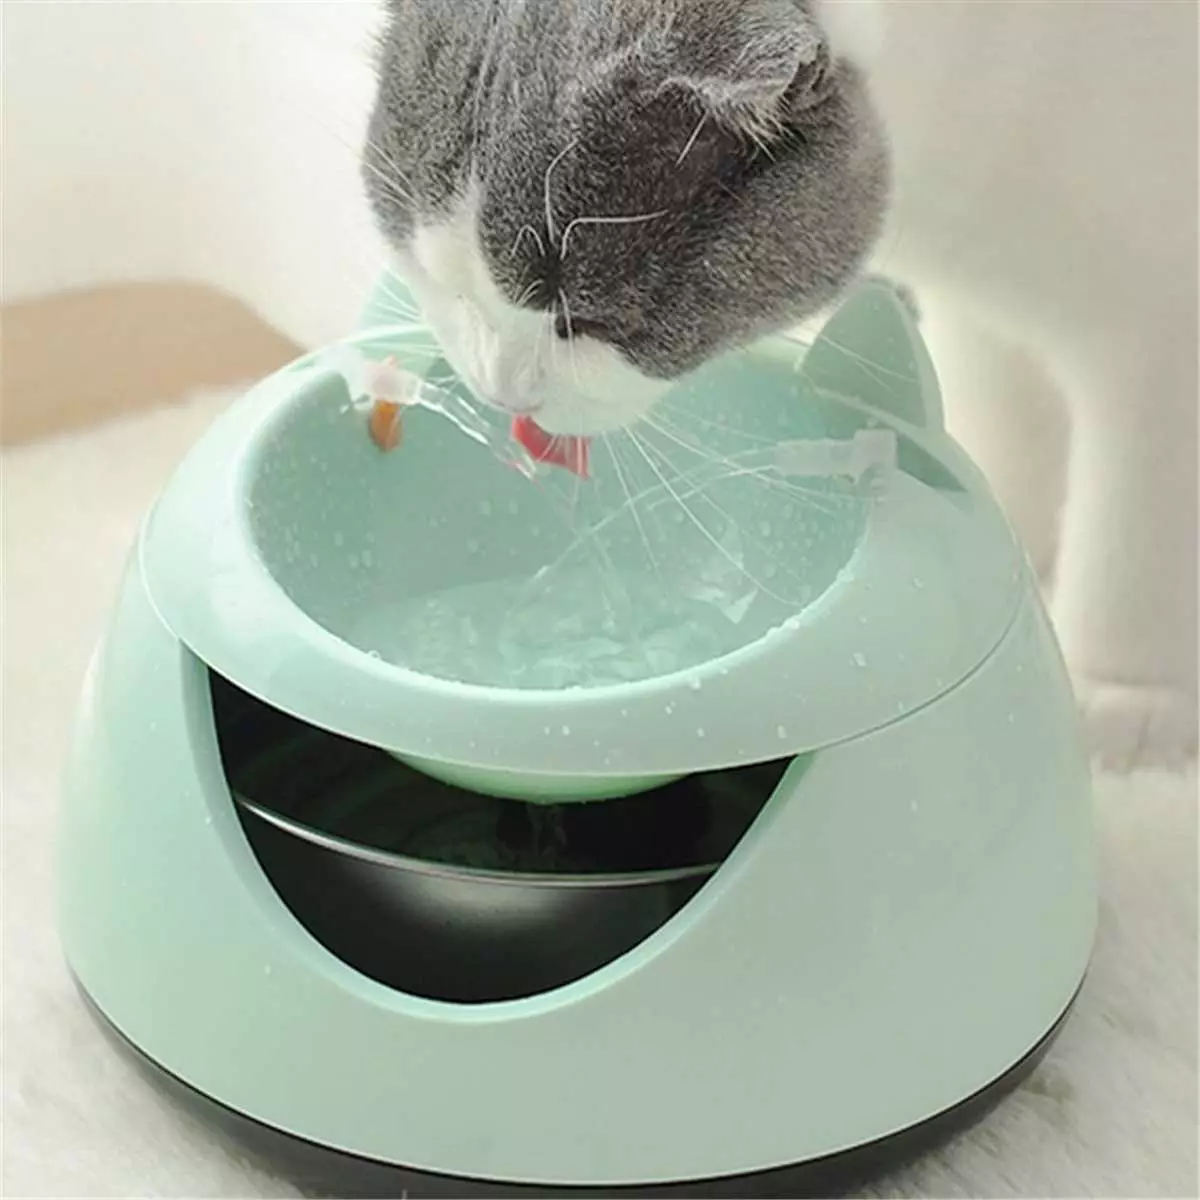 Мачји јахач: Аутоматска фонтана за пиће за мачку. Како научити питку воду за пиће из посуде или аутоматског аутомобила? 11892_34